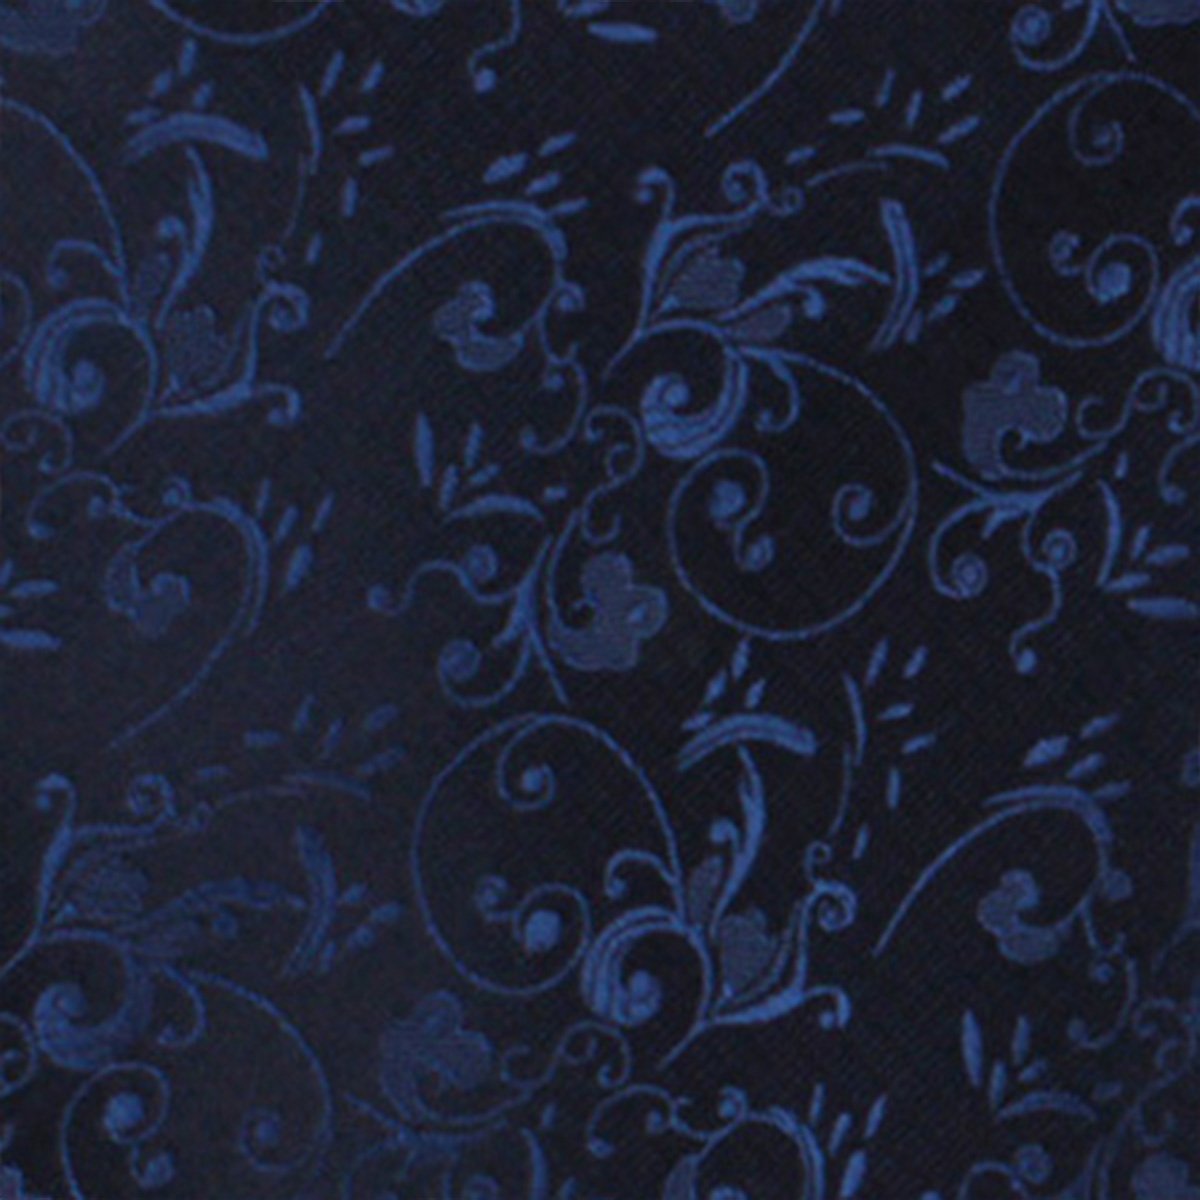 Parc Monceau Navy Blue Floral Necktie Fabric